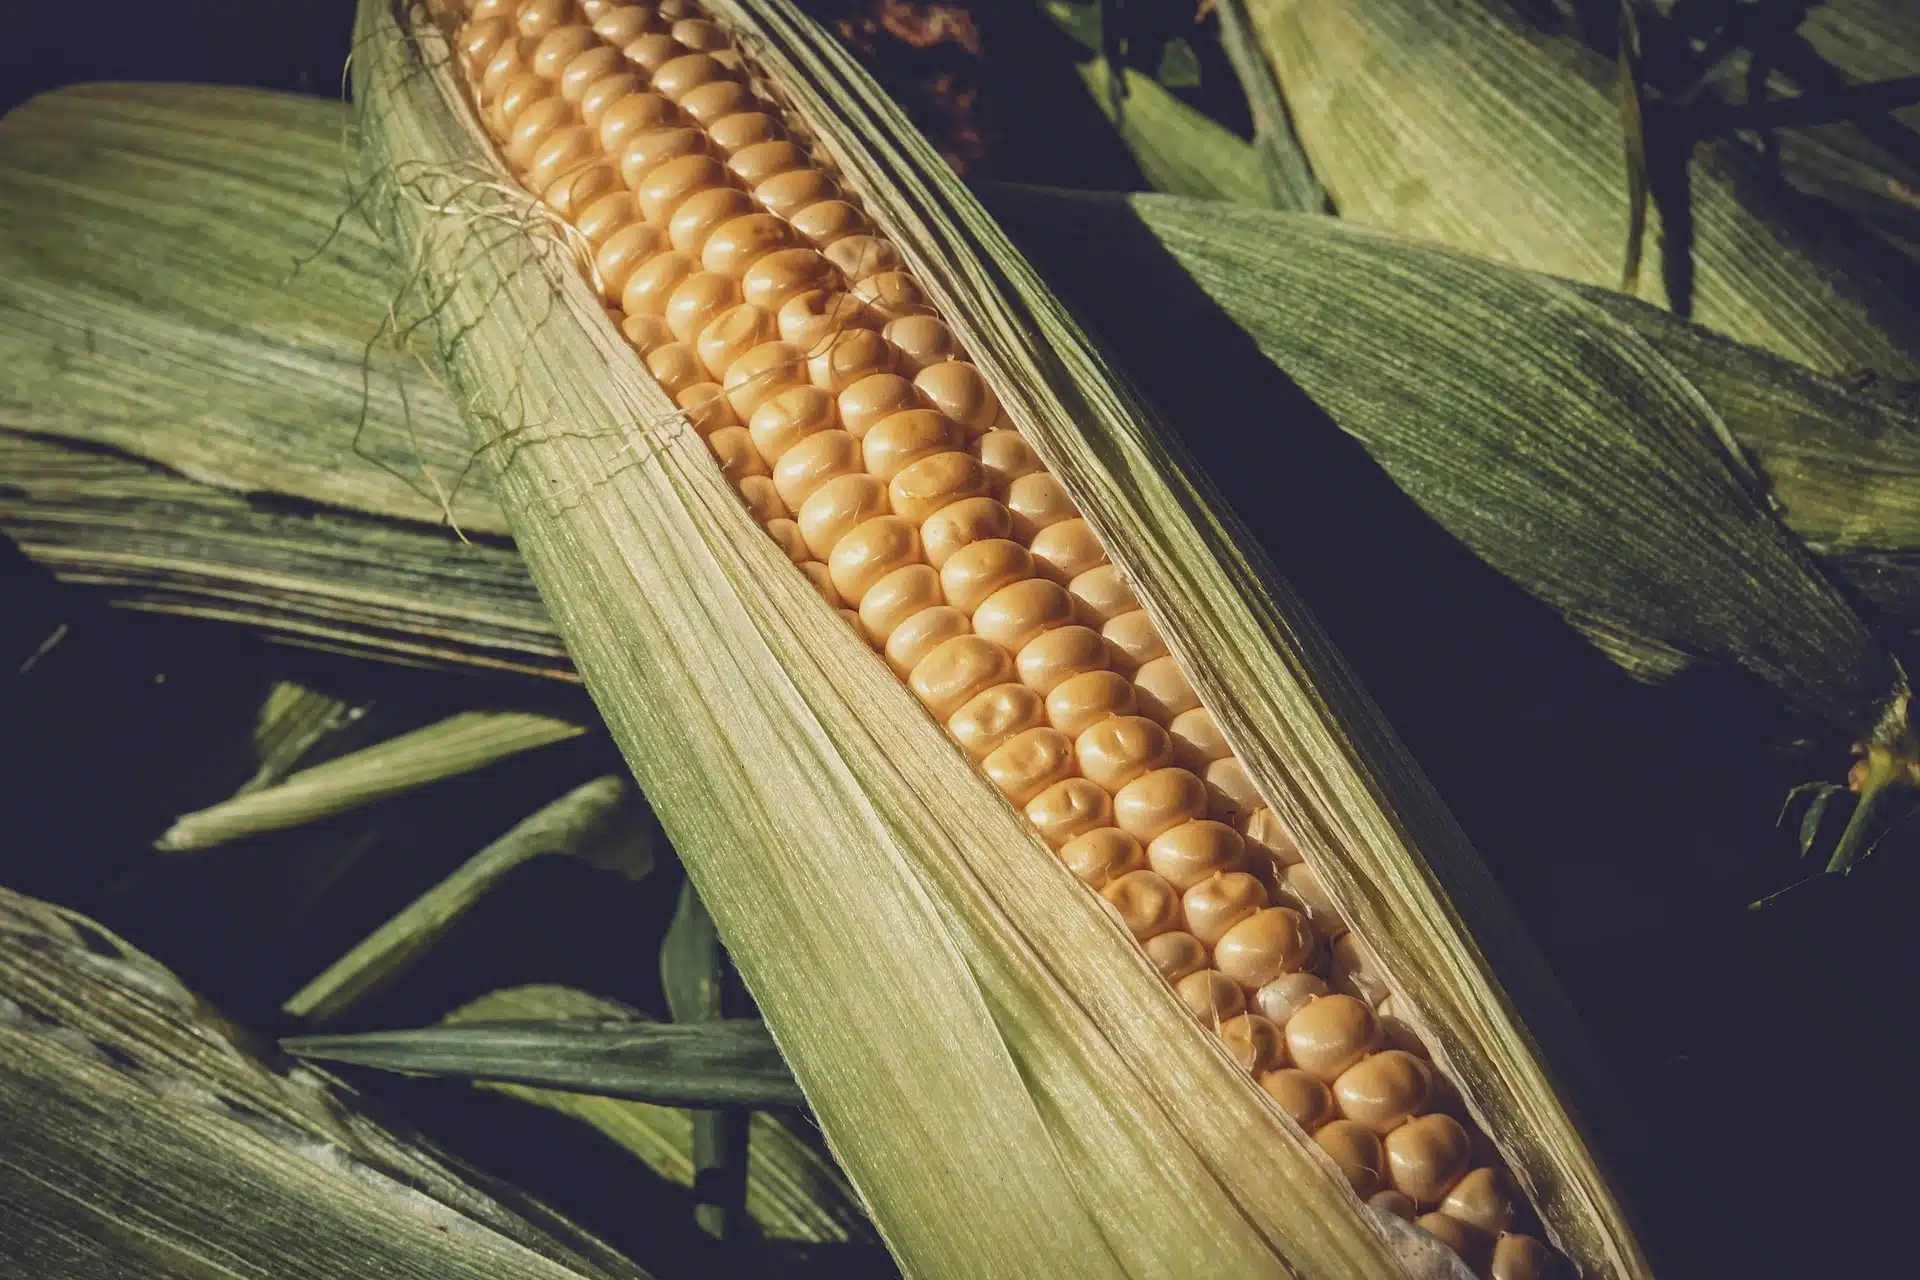 Na foto, vemos algumas palhas de milho e em um milho ainda na palha. Foto ilustra matéria de armazenamento de milho.